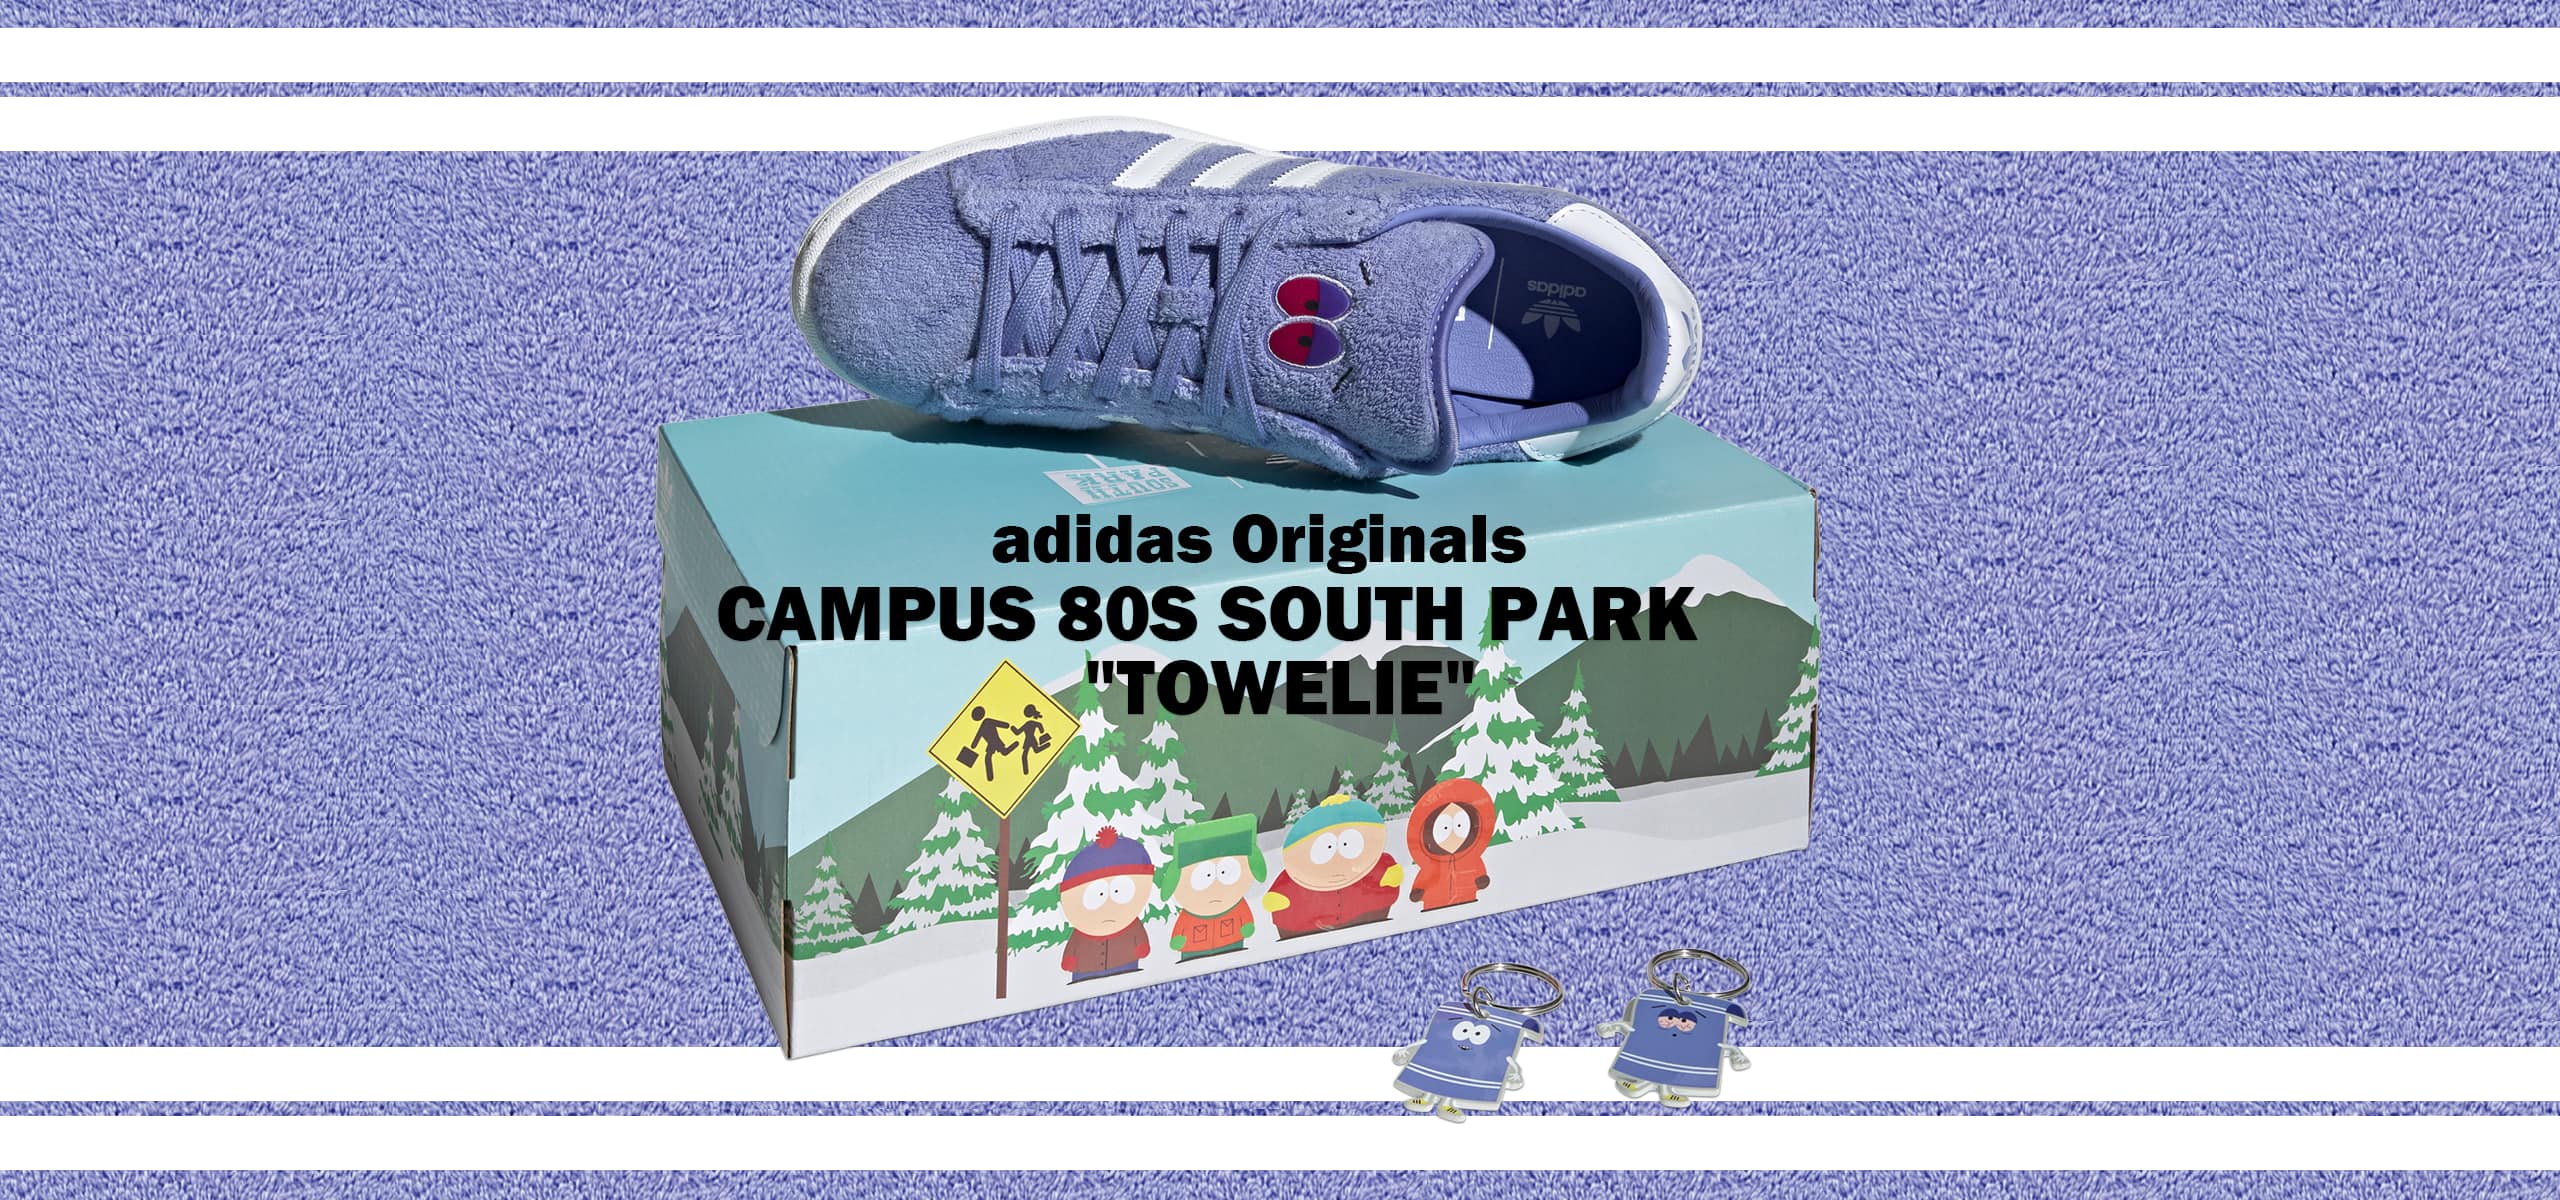 "adidas-campus-towelie"